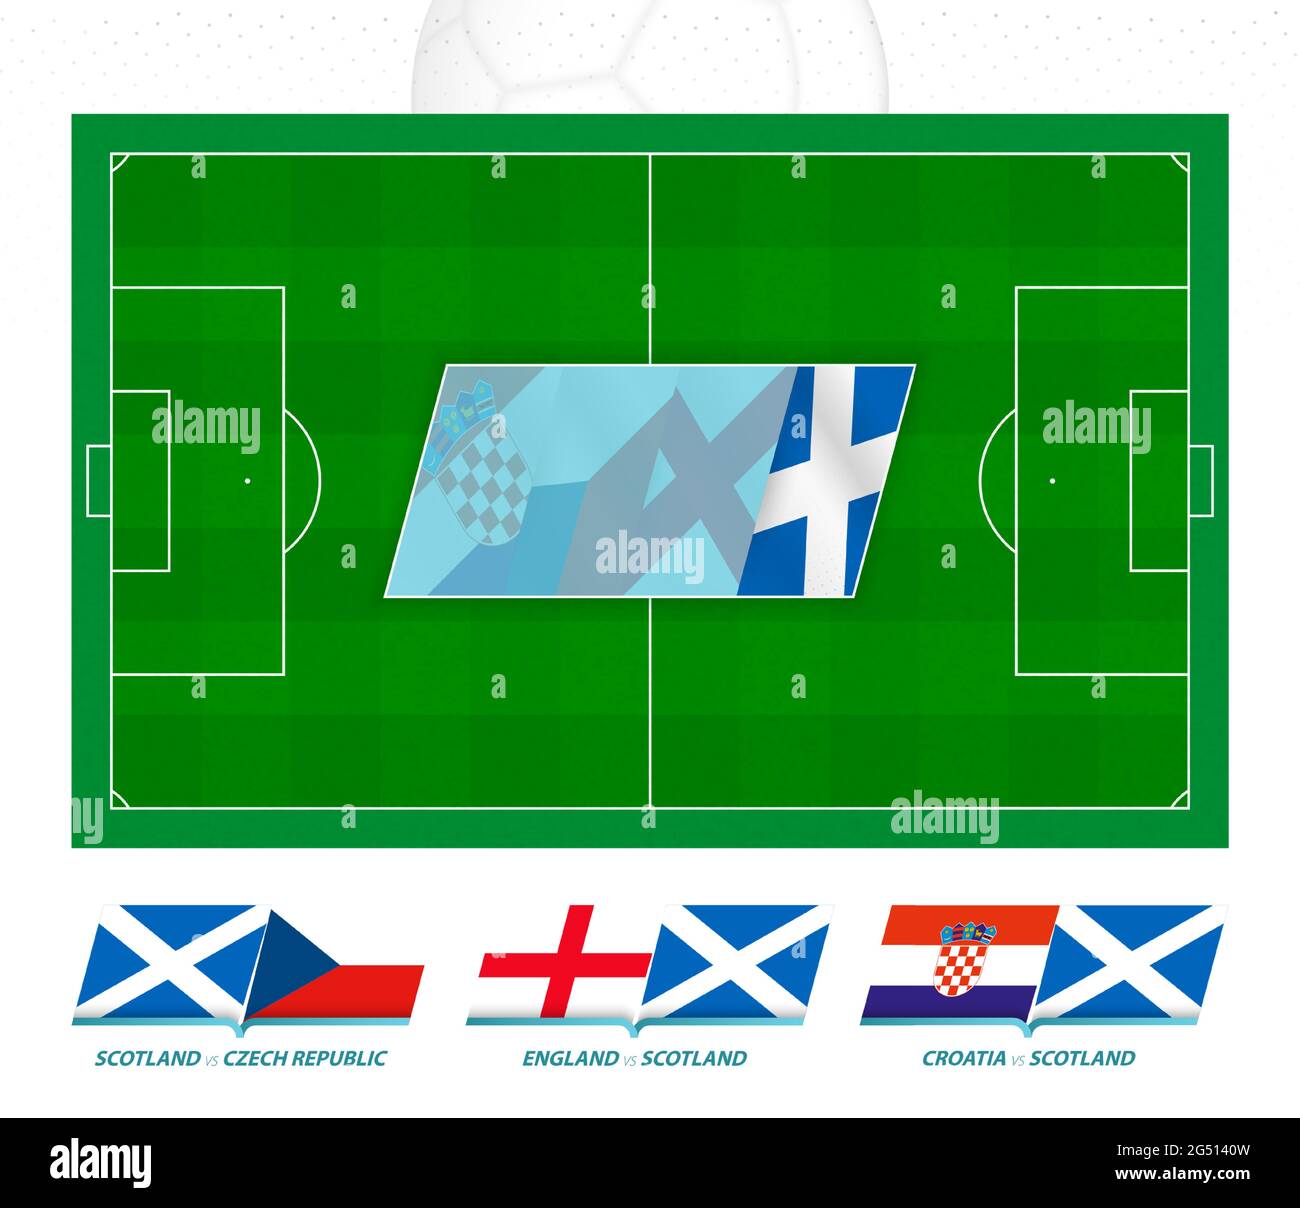 Alle Spiele der schottischen Fußballmannschaft im europäischen Wettbewerb. Fußballplatz und Spielsymbol. Vektorset. Stock Vektor